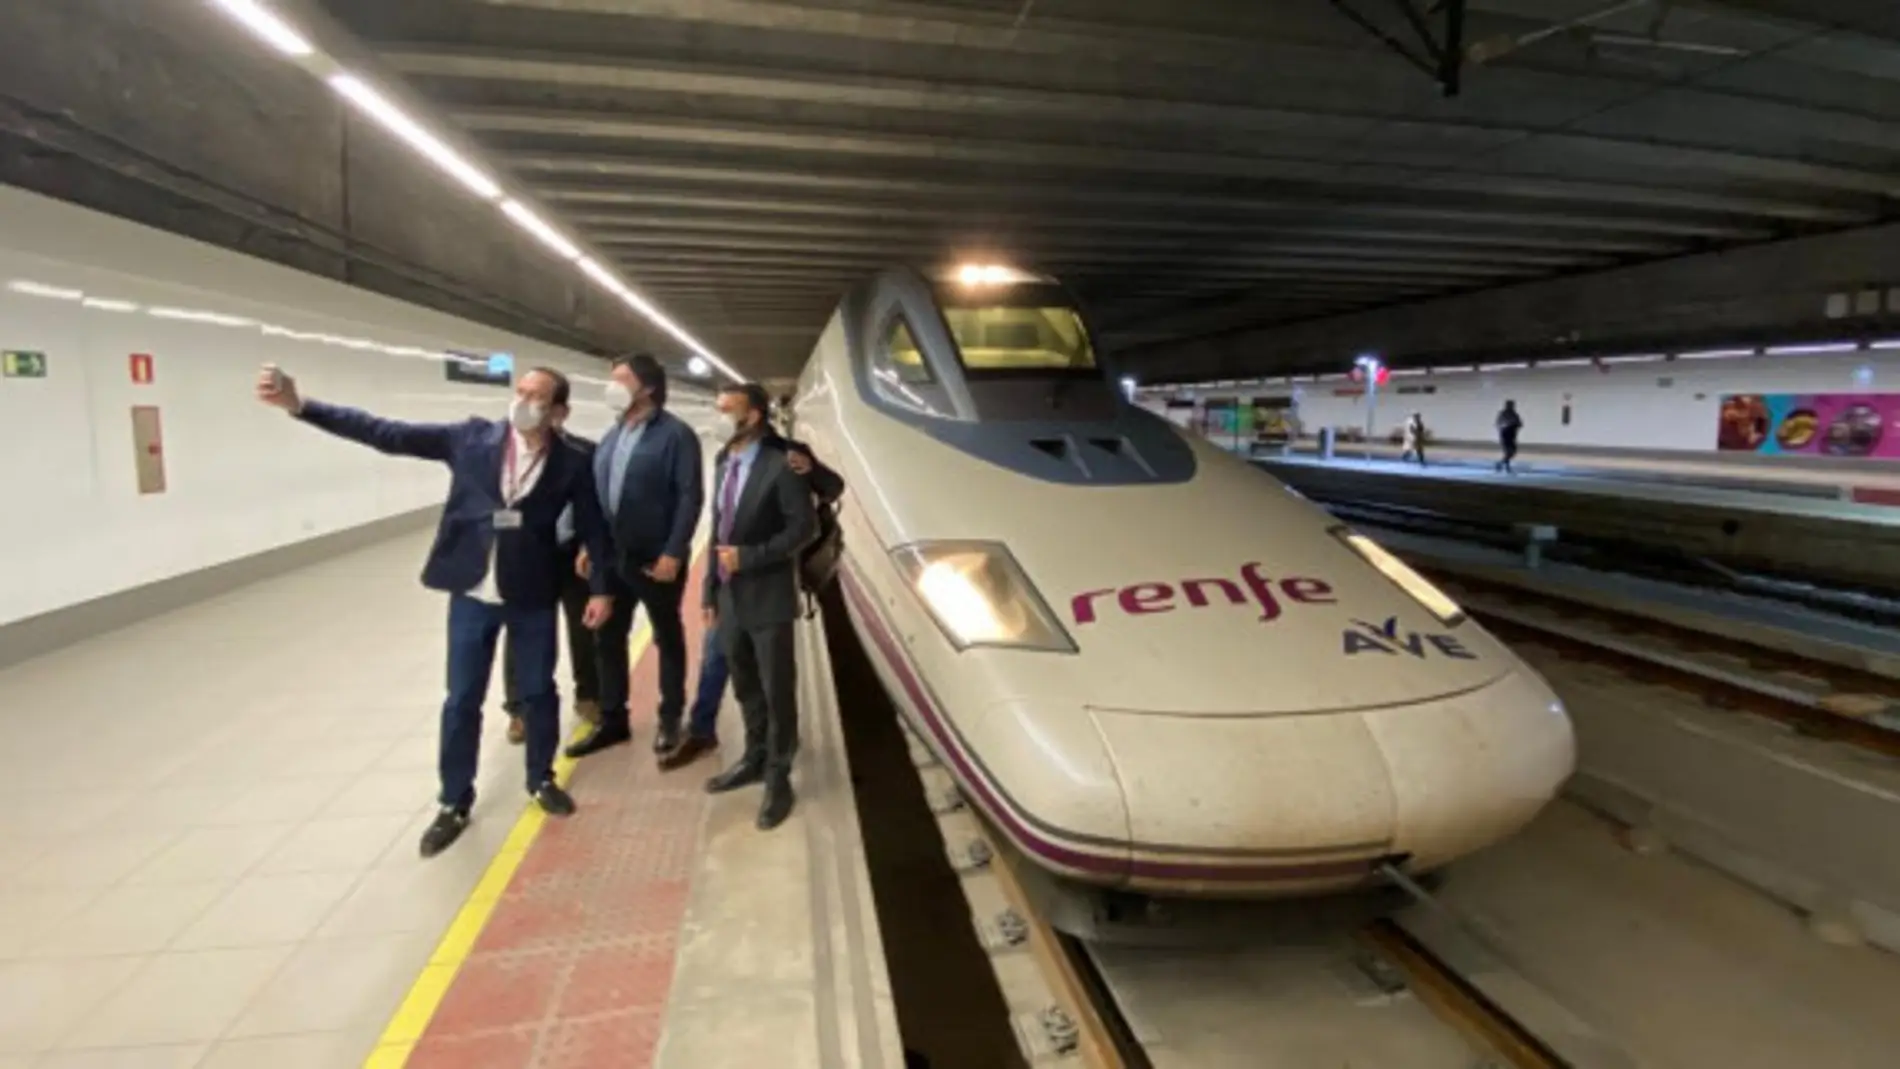 Esta organización ofrece a sus clientes paquetes de viajes a diferentes partes de España utilizando la red ferroviaria 